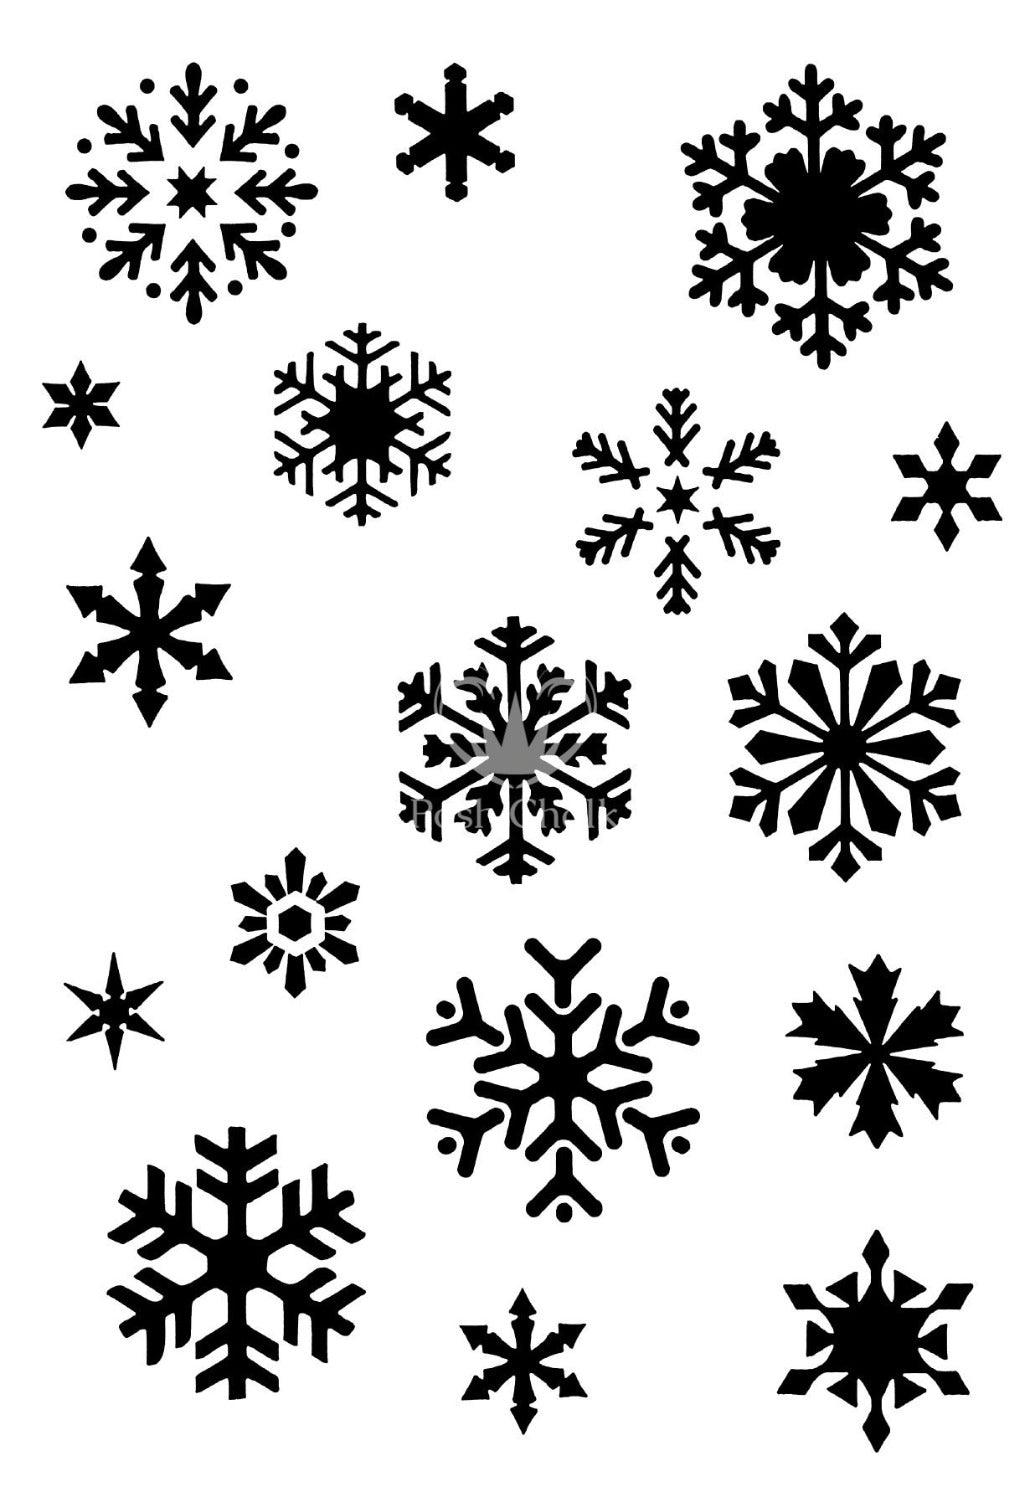 posh-chalk-stencil-Snow-Flakes-Schablone-schneeflocken-online-kaufen